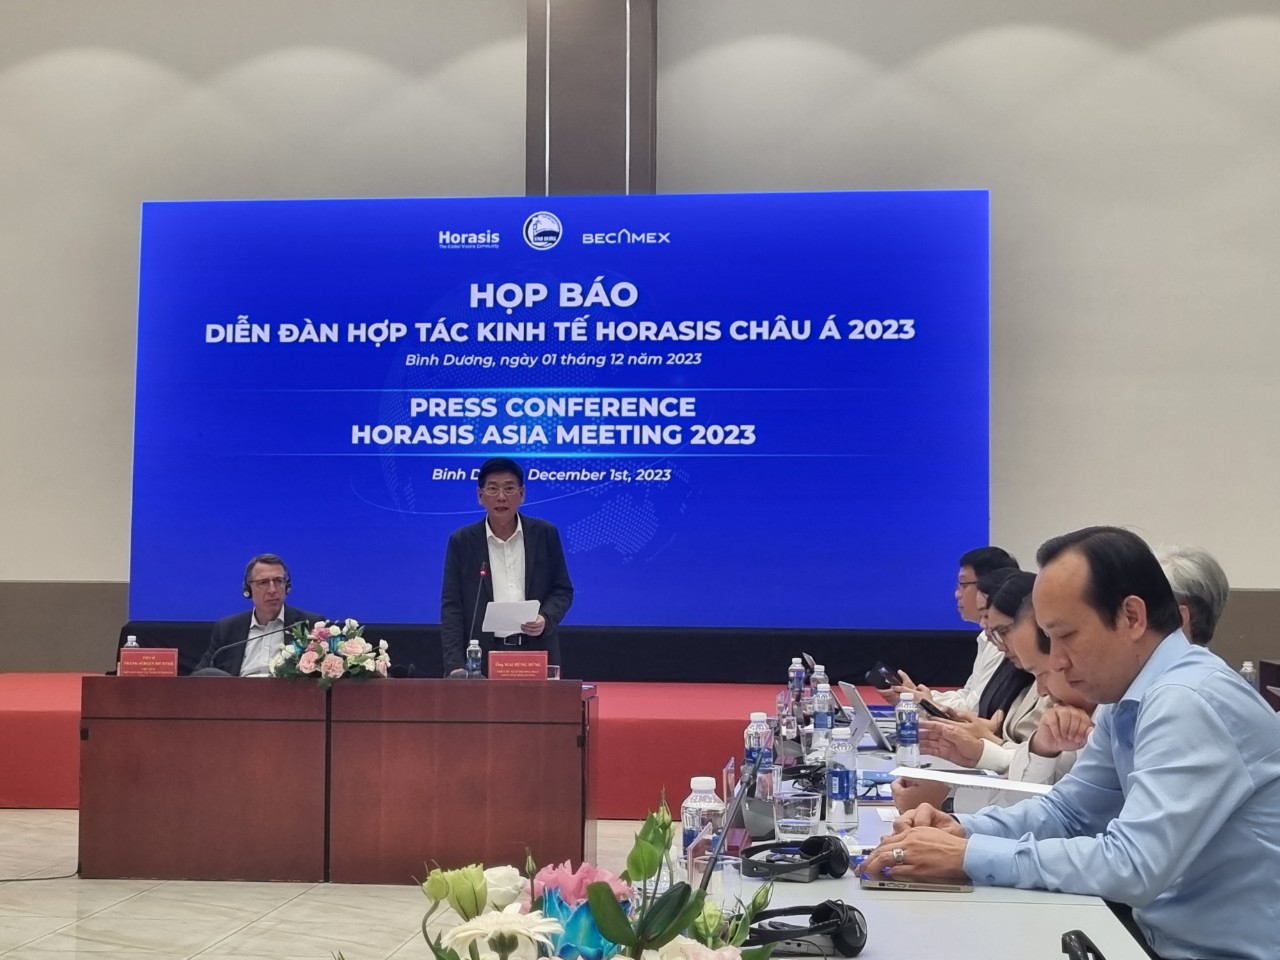 Bình Dương đăng cai tổ chức Diễn đàn Hợp tác kinh tế Horasis Châu Á 2023